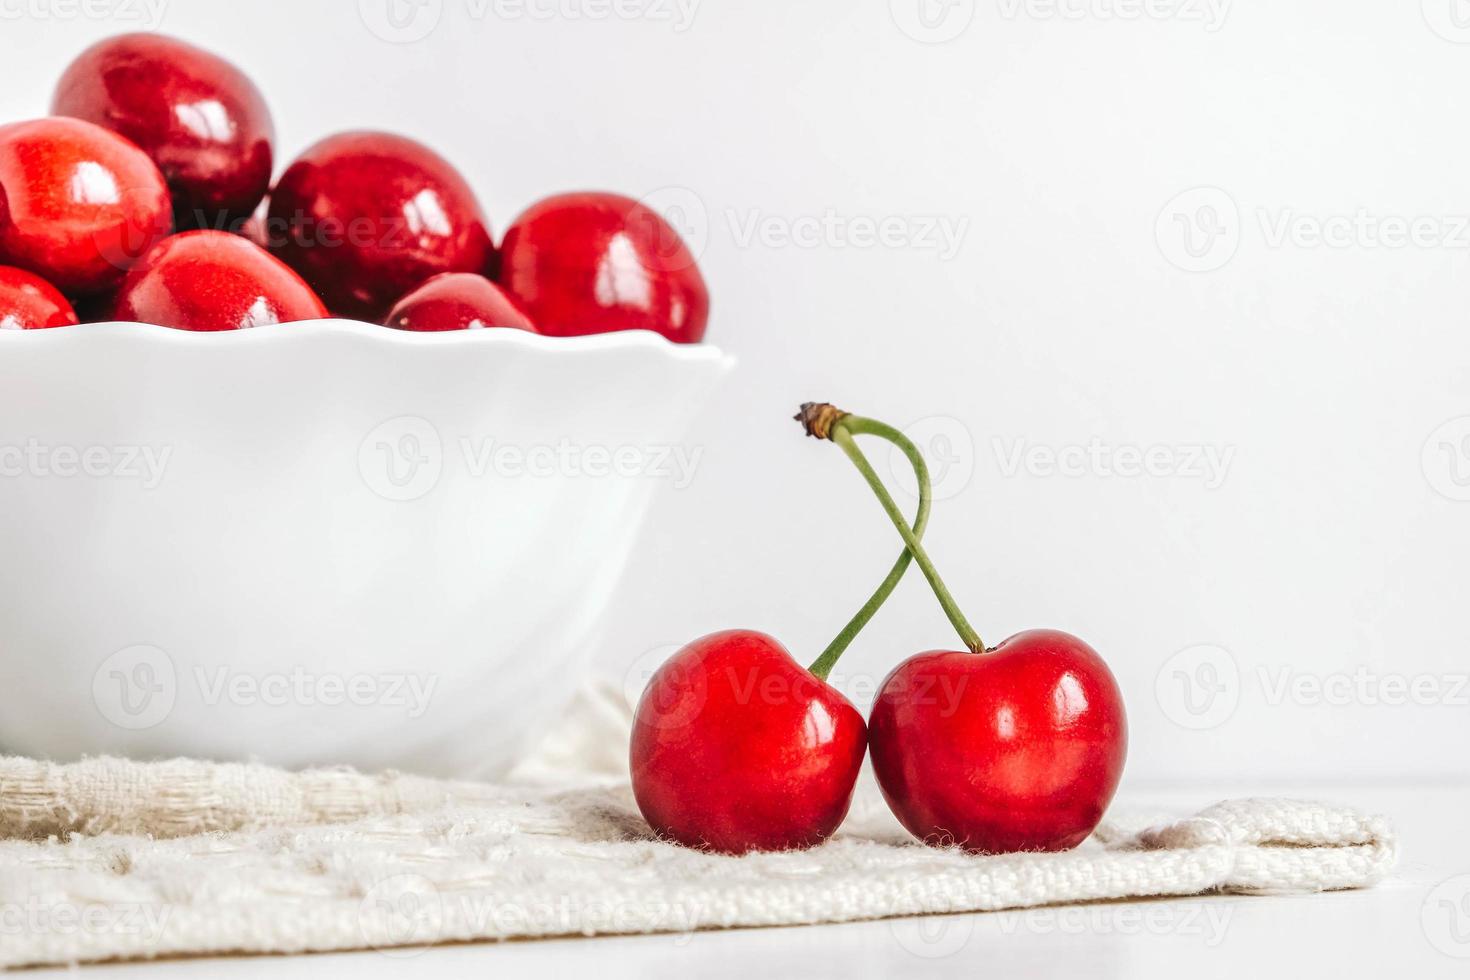 cerezas rojas frescas y jugosas en un plato blanco sobre el fondo blanco de madera. copiar, espacio vacío para texto foto